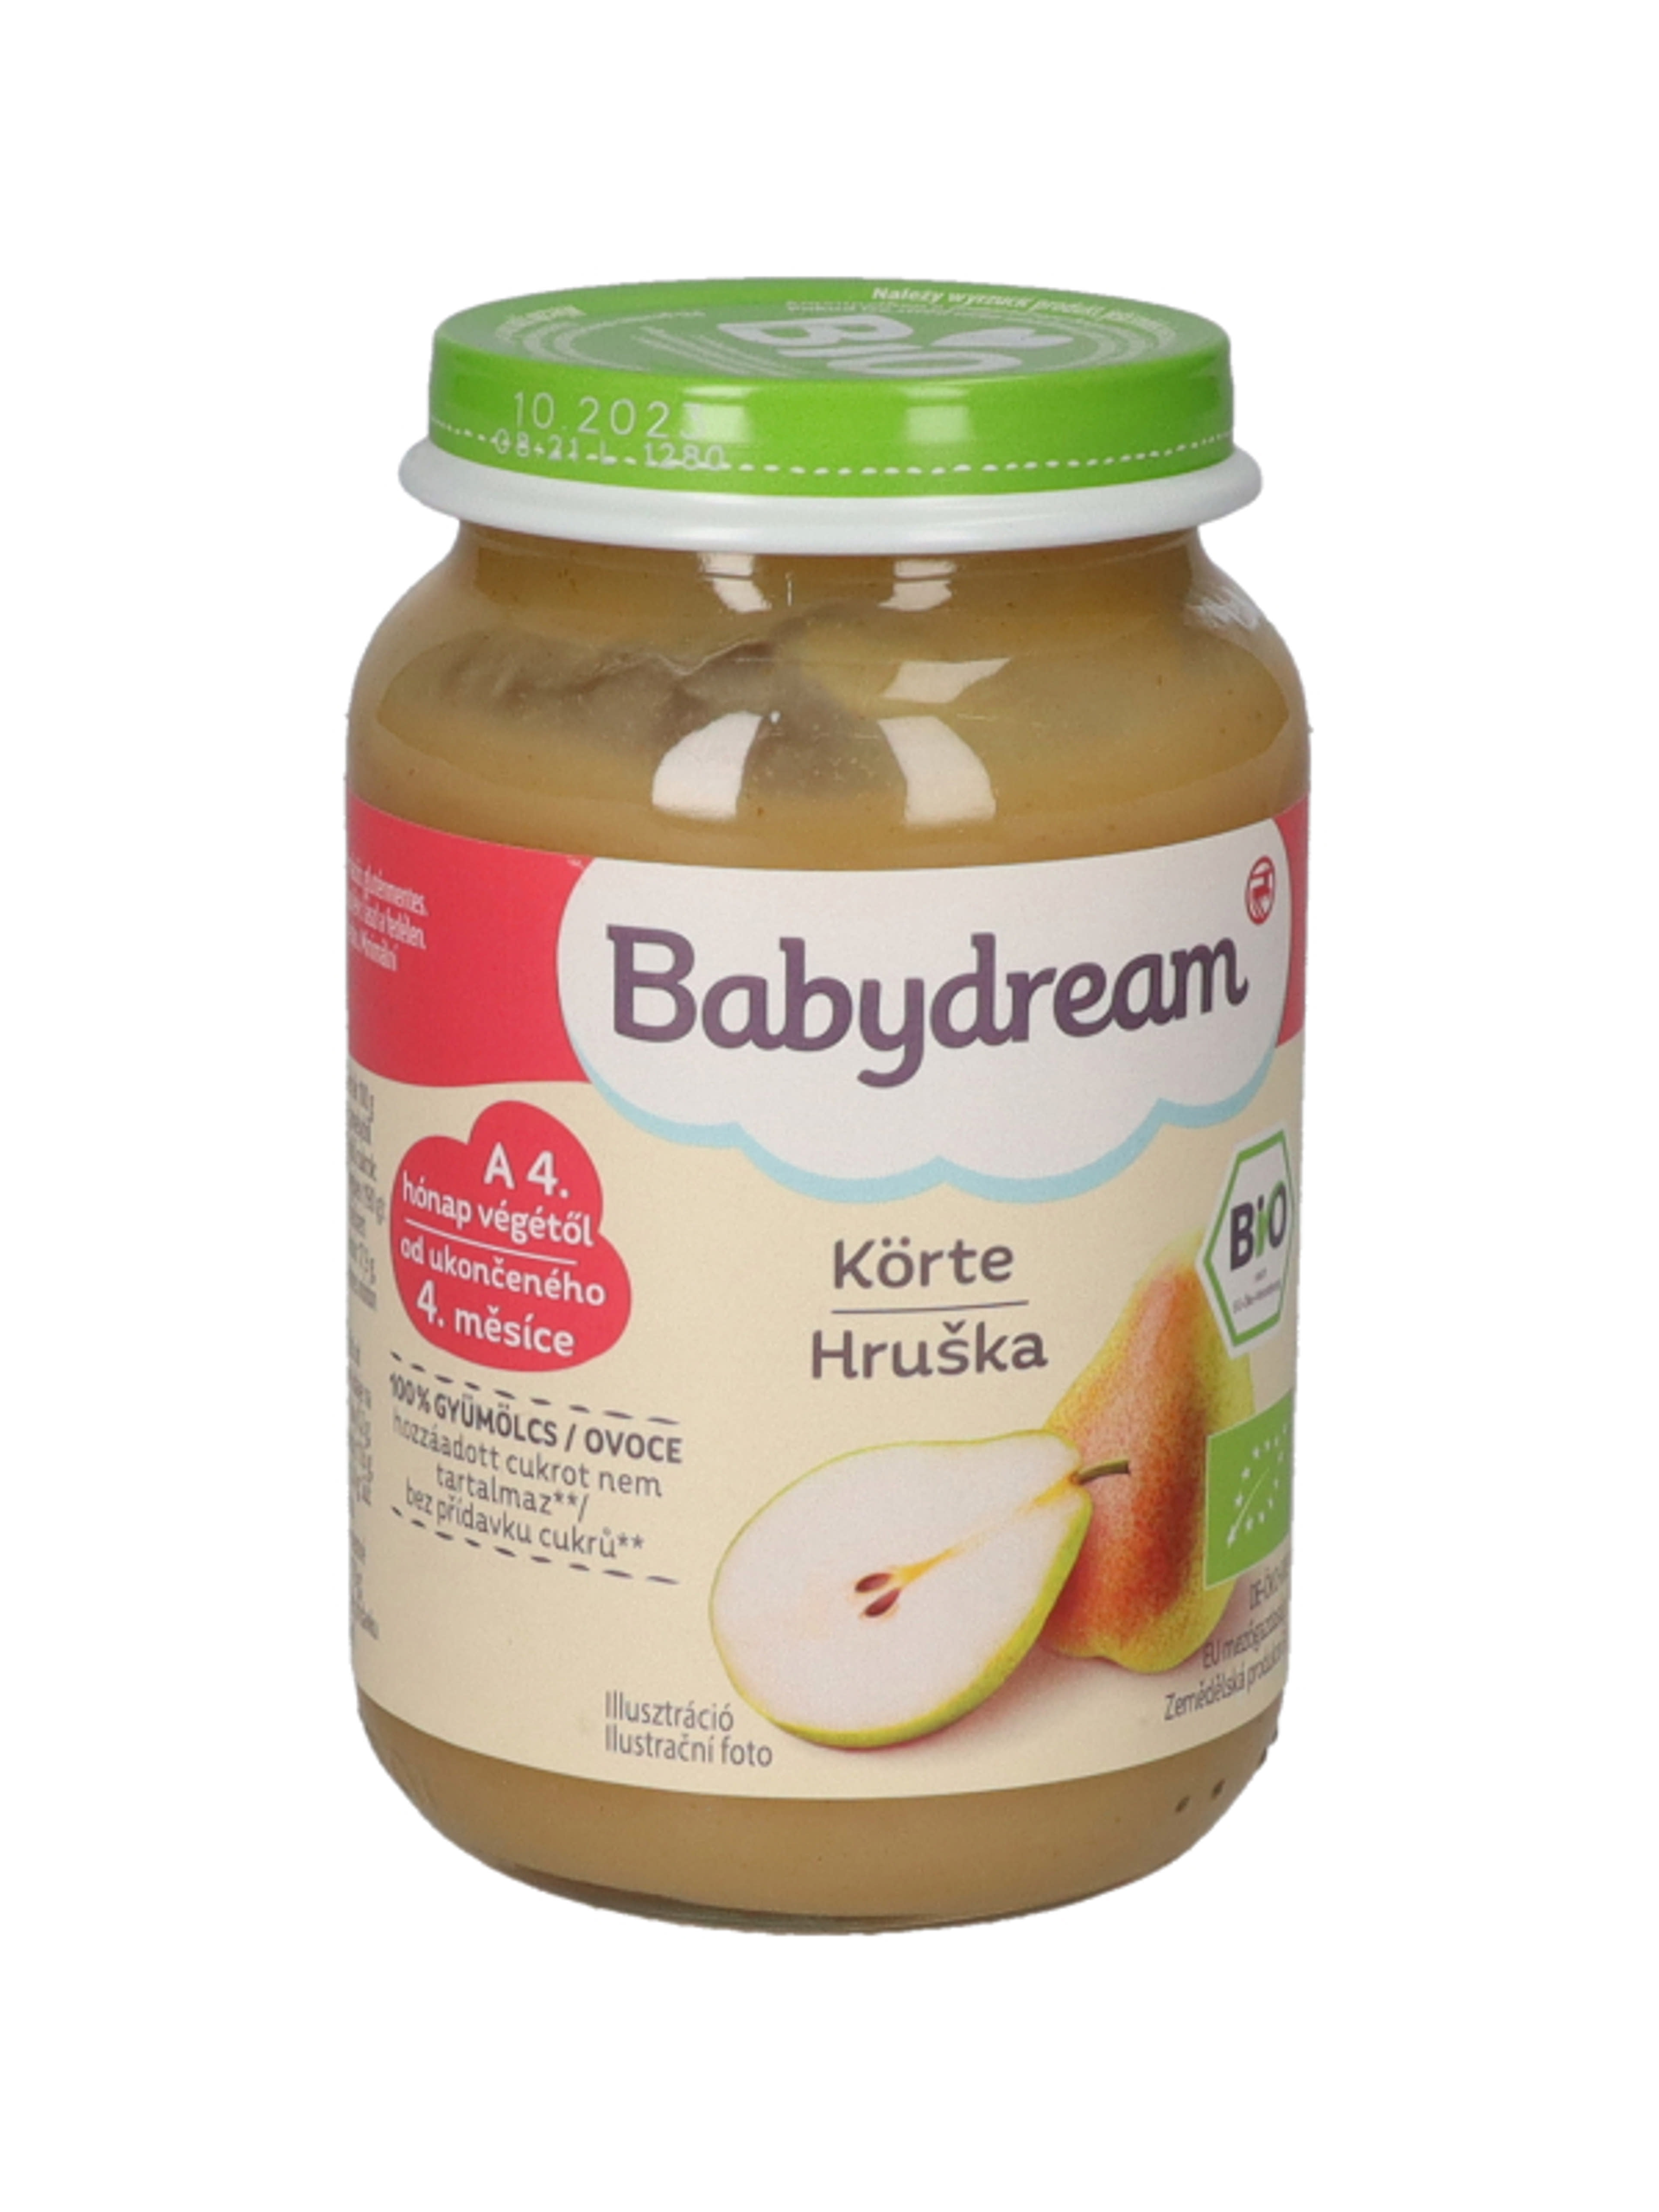 Babydream Bio 100% Gyümölcs Körte 4/5 Hónapos Kortól - 190 g-2